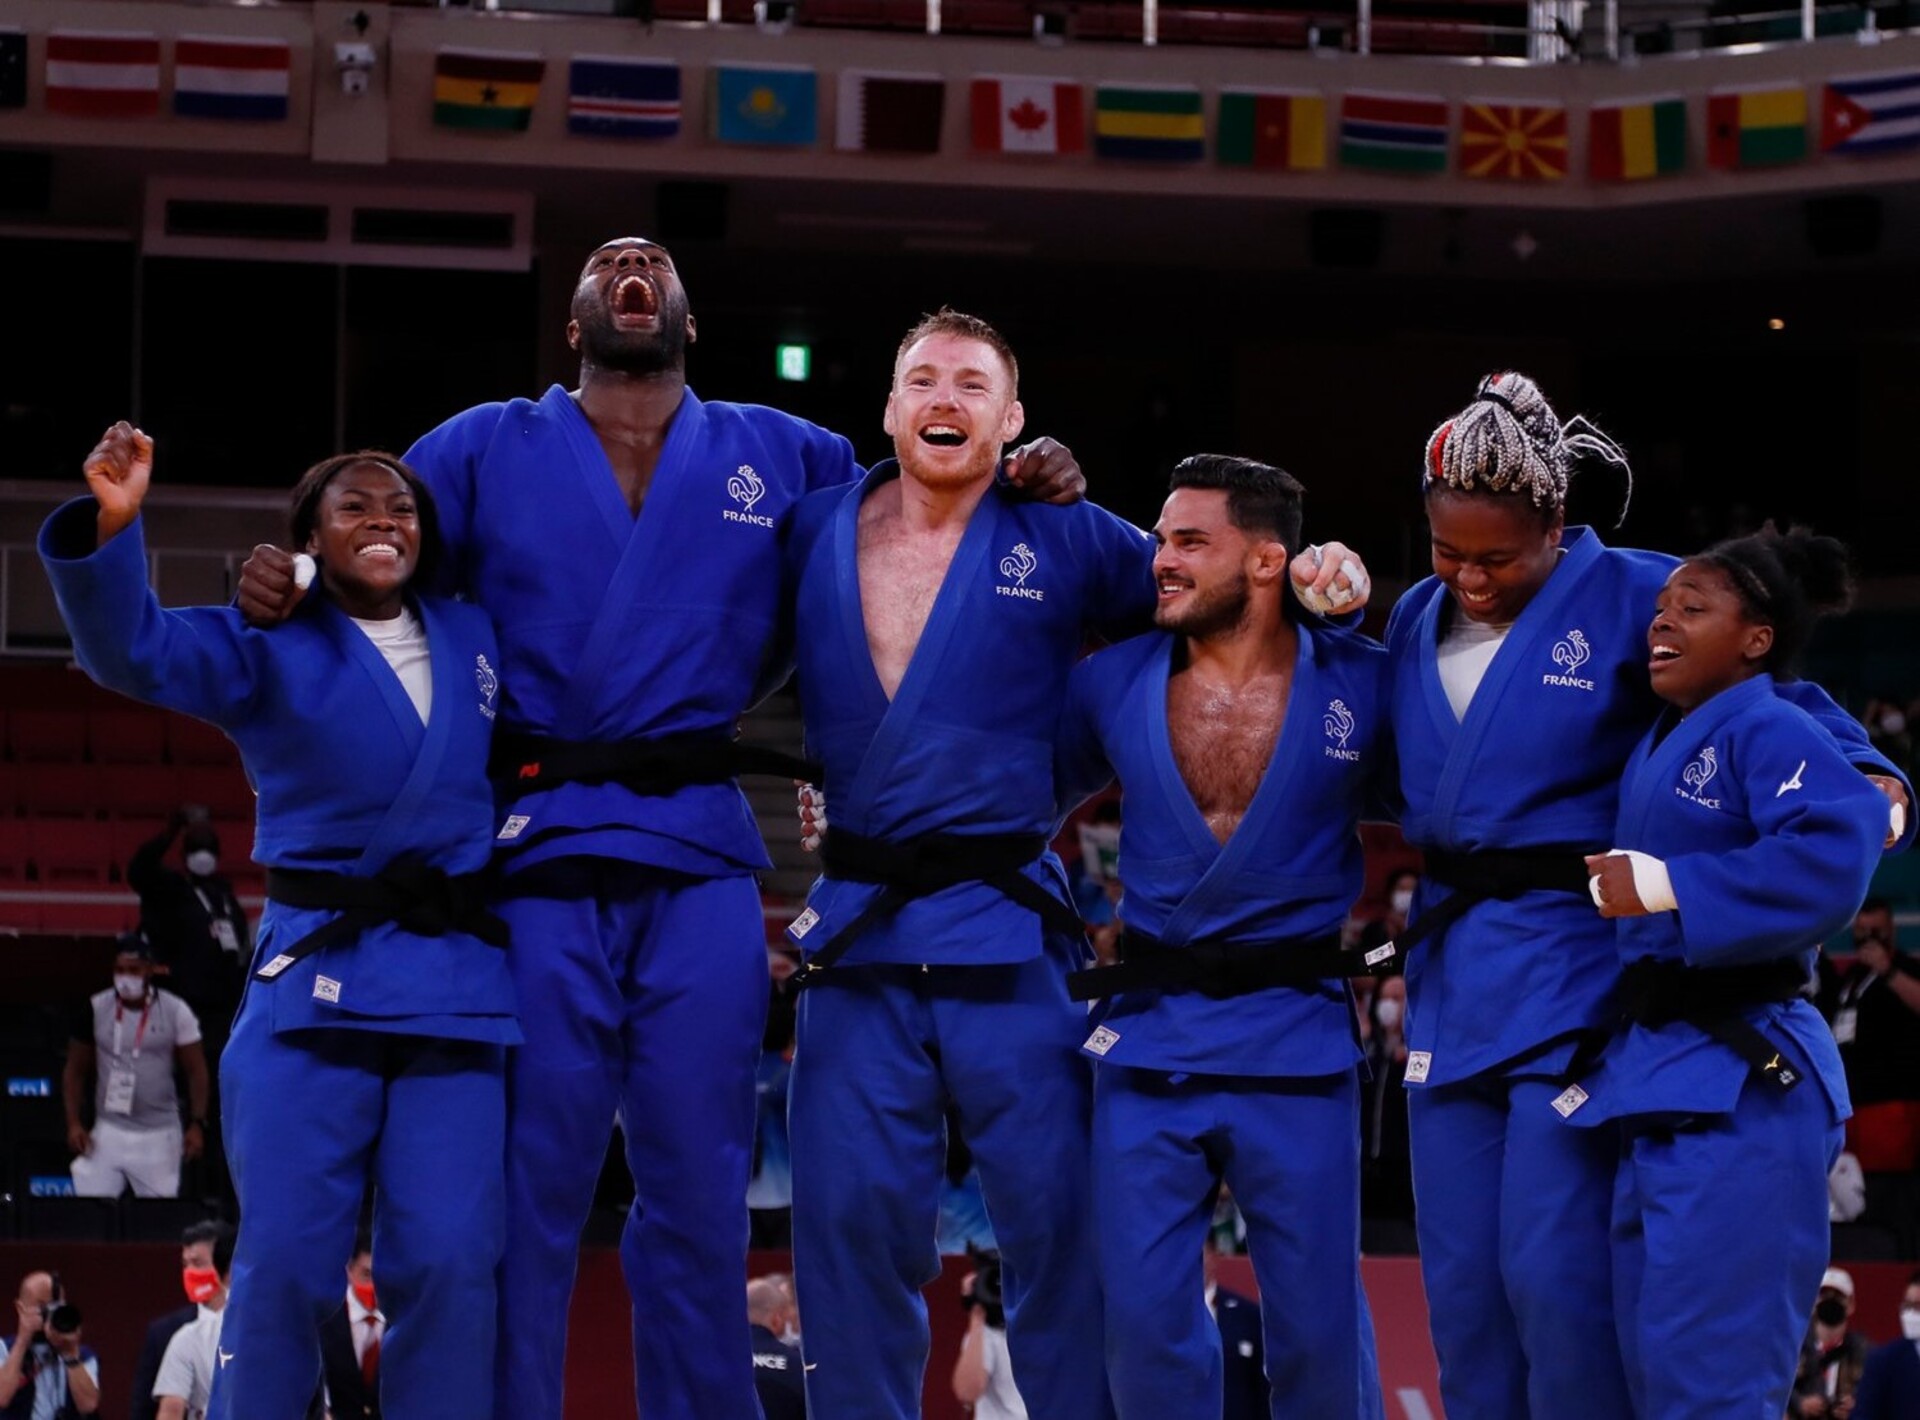 L'équipe de France de judo est championne olympique